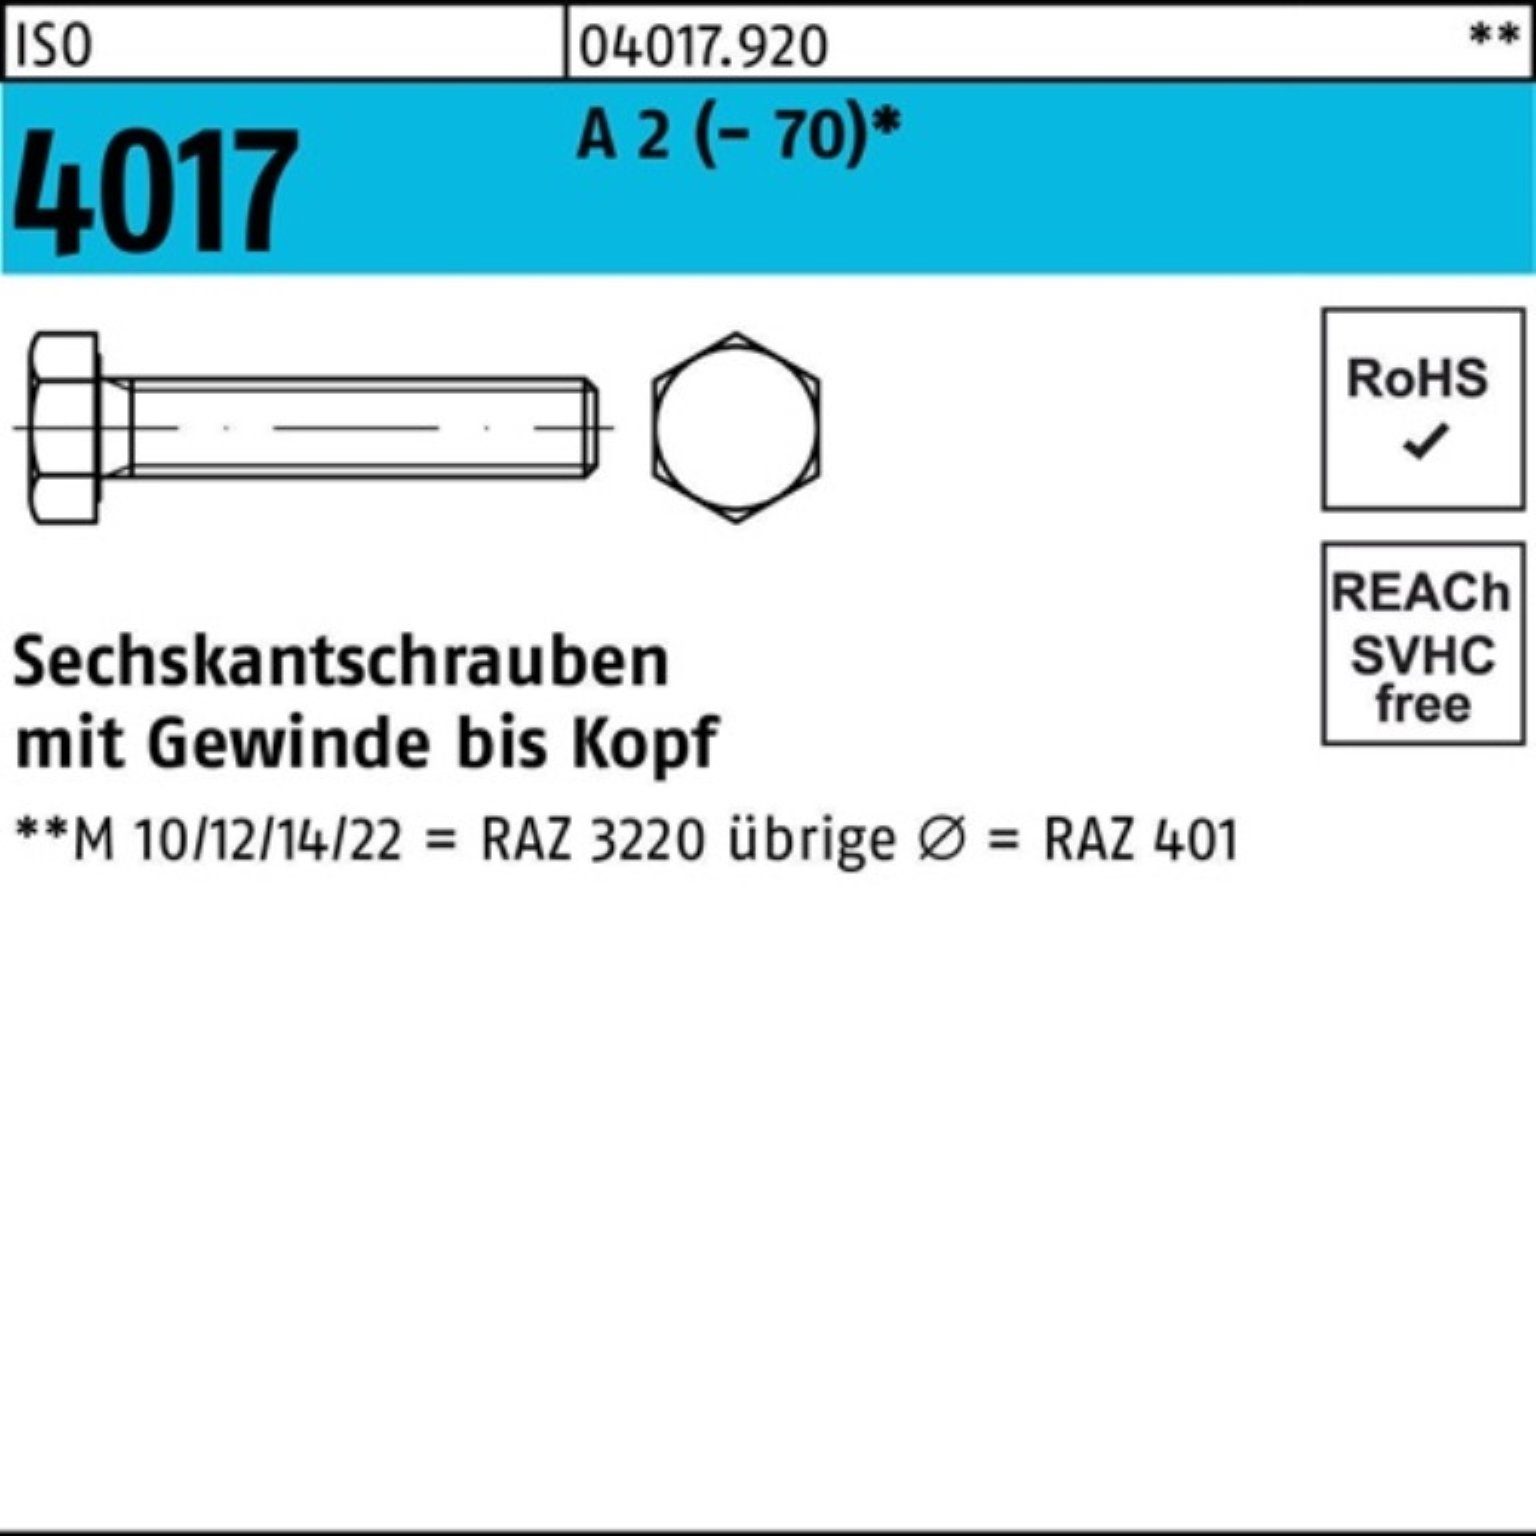 Bufab Sechskantschraube 100er Pack Sechskantschraube ISO 4017 VG M24x 180 A 2 (70) 1 Stück | Schrauben